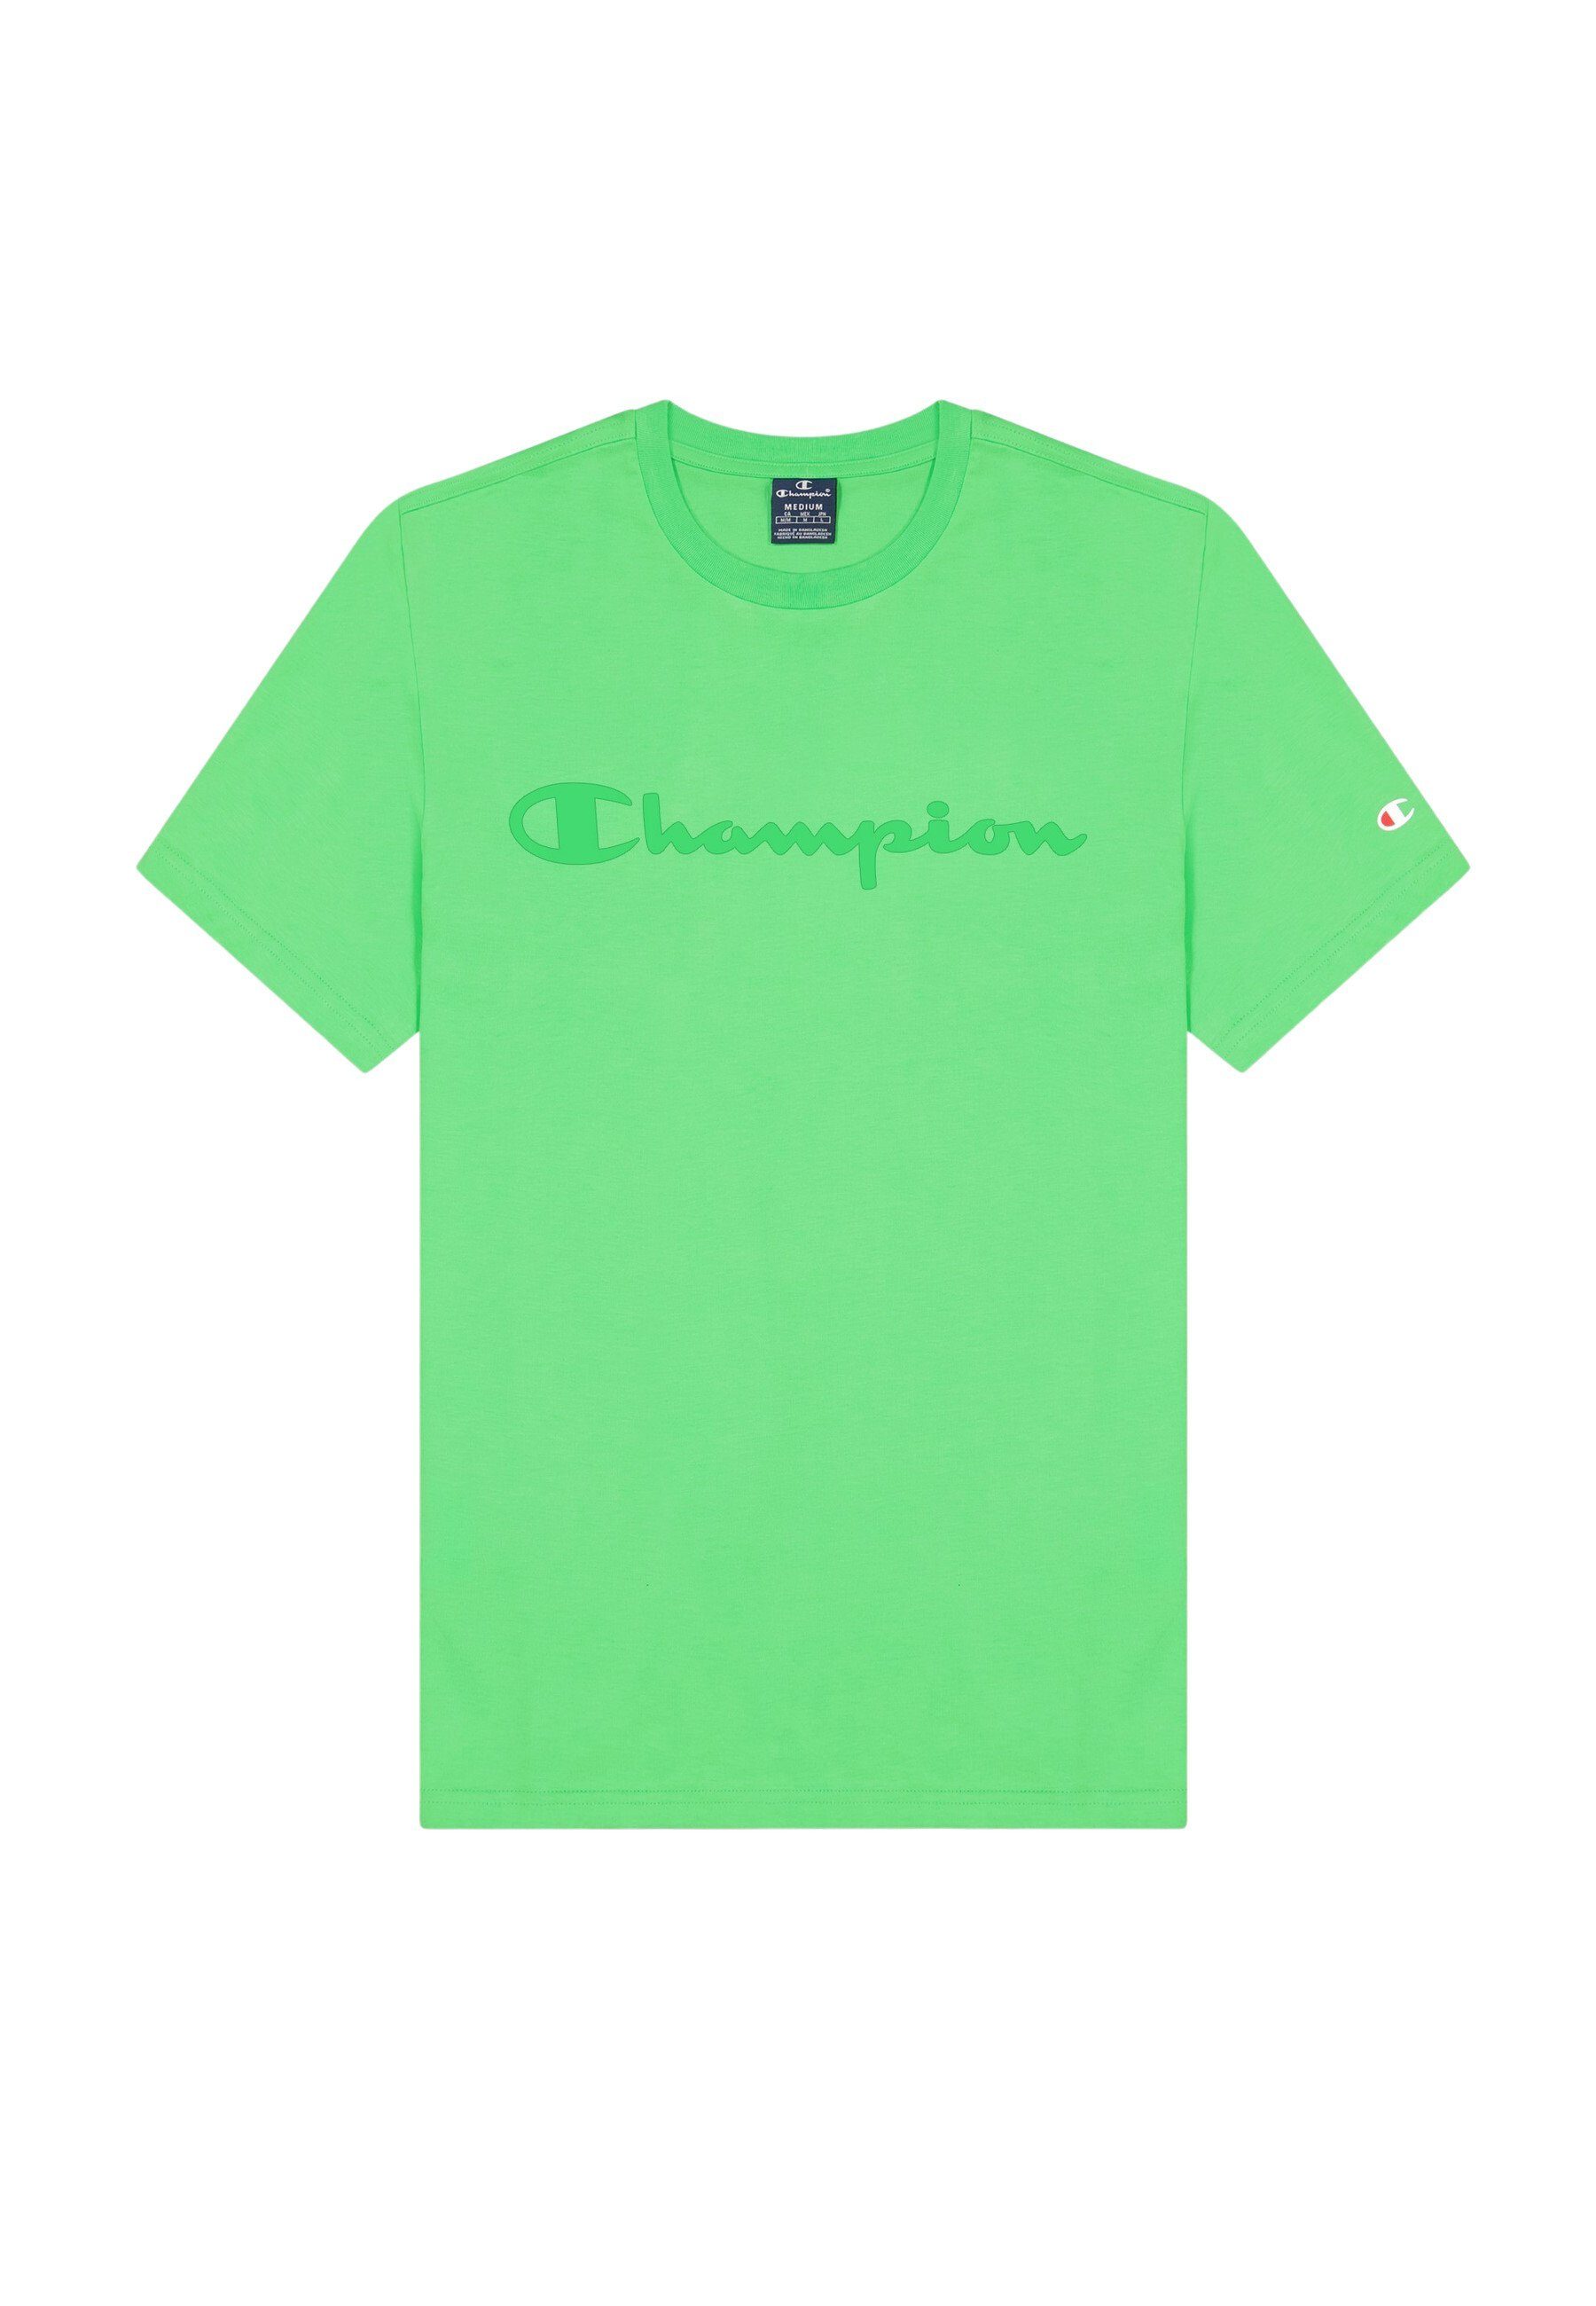 Spielzeugladen Champion T-Shirt aus grün Baumwolle Shirt Rundhals-T-Shirt mit